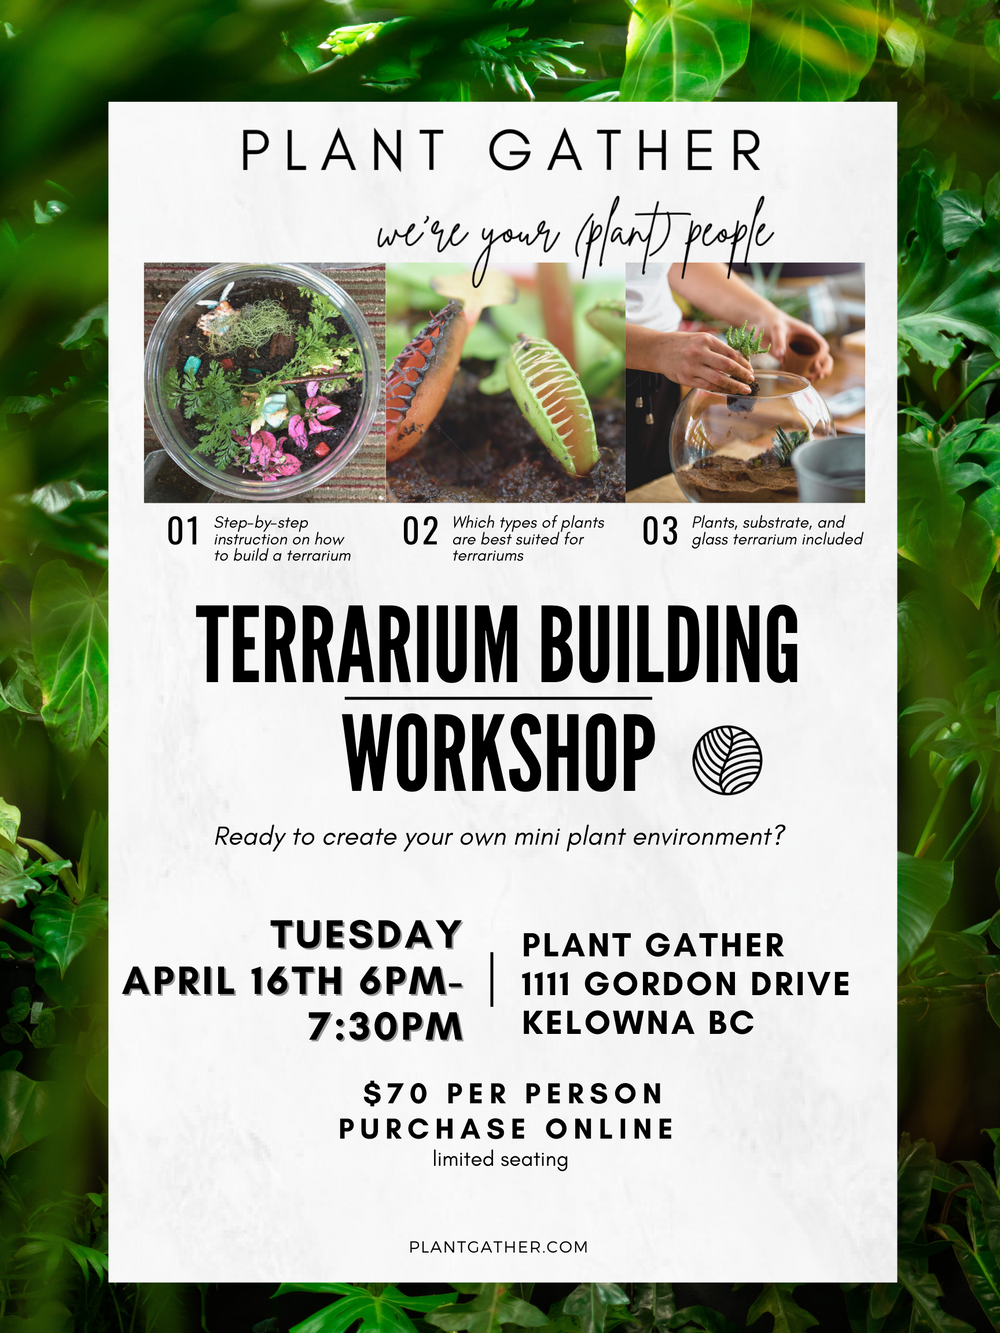 Terrarium Building Workshop - April 16th @ 6PM